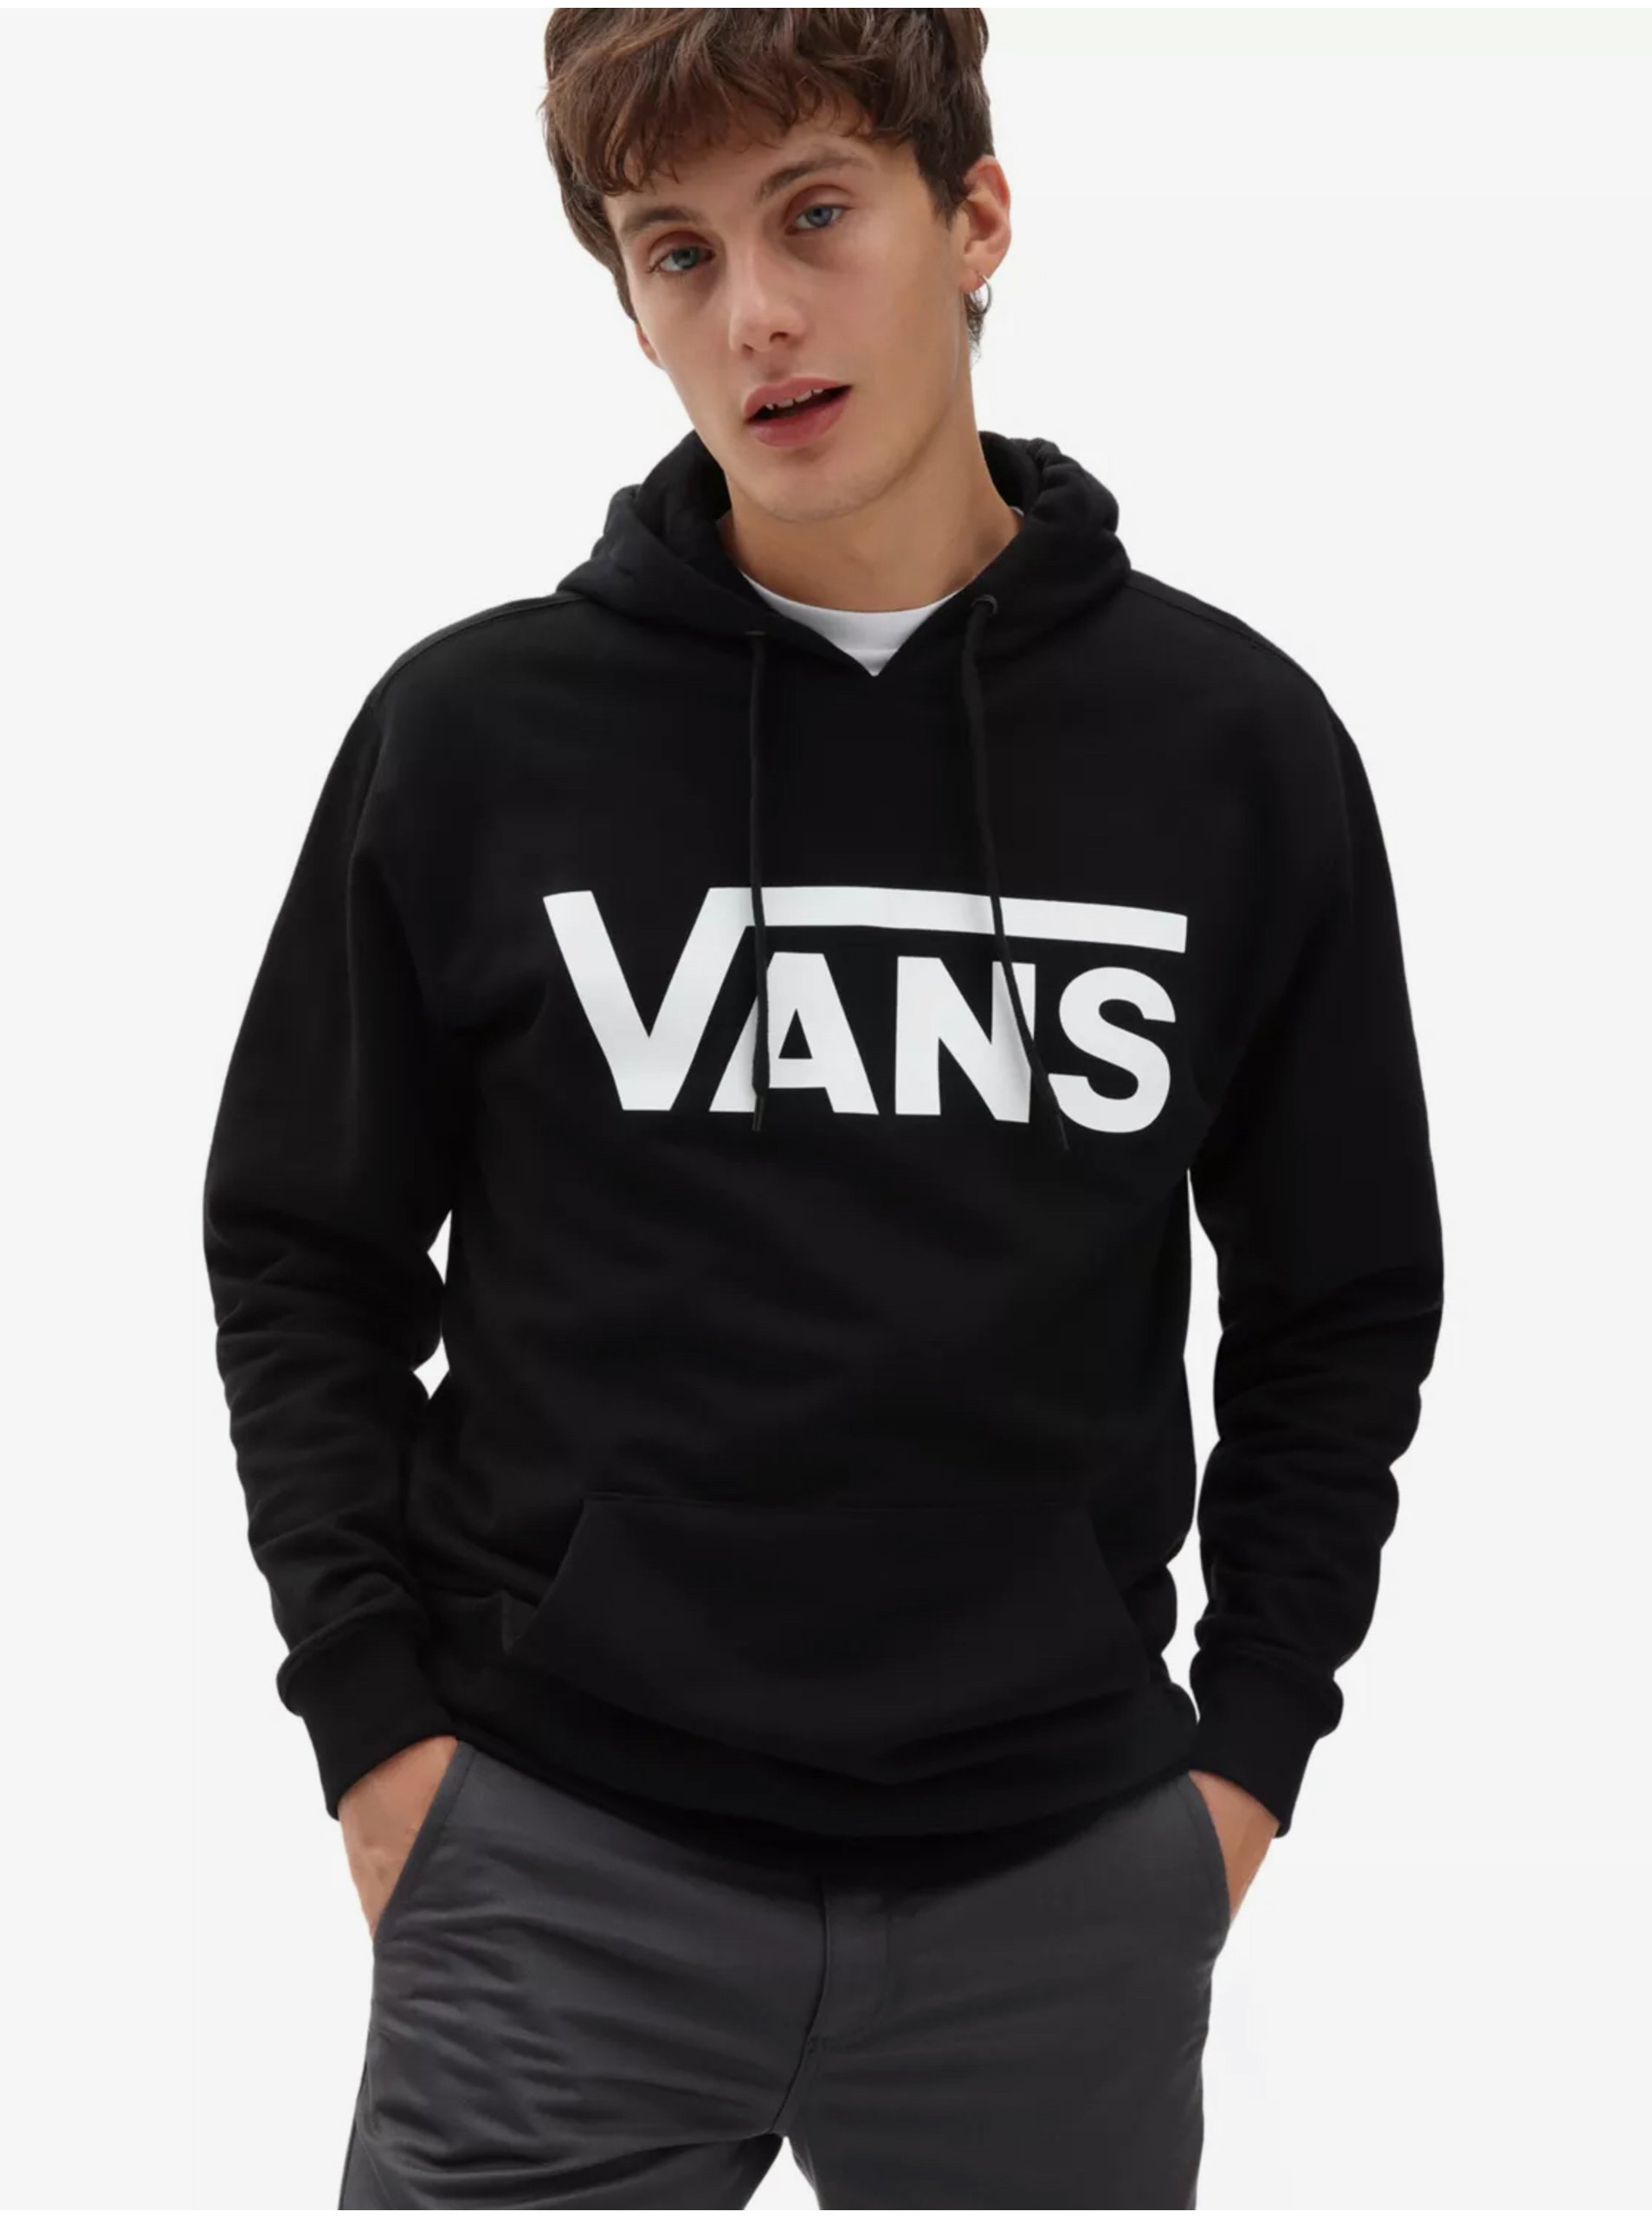 Men's black sweatshirt with VANS print - Men